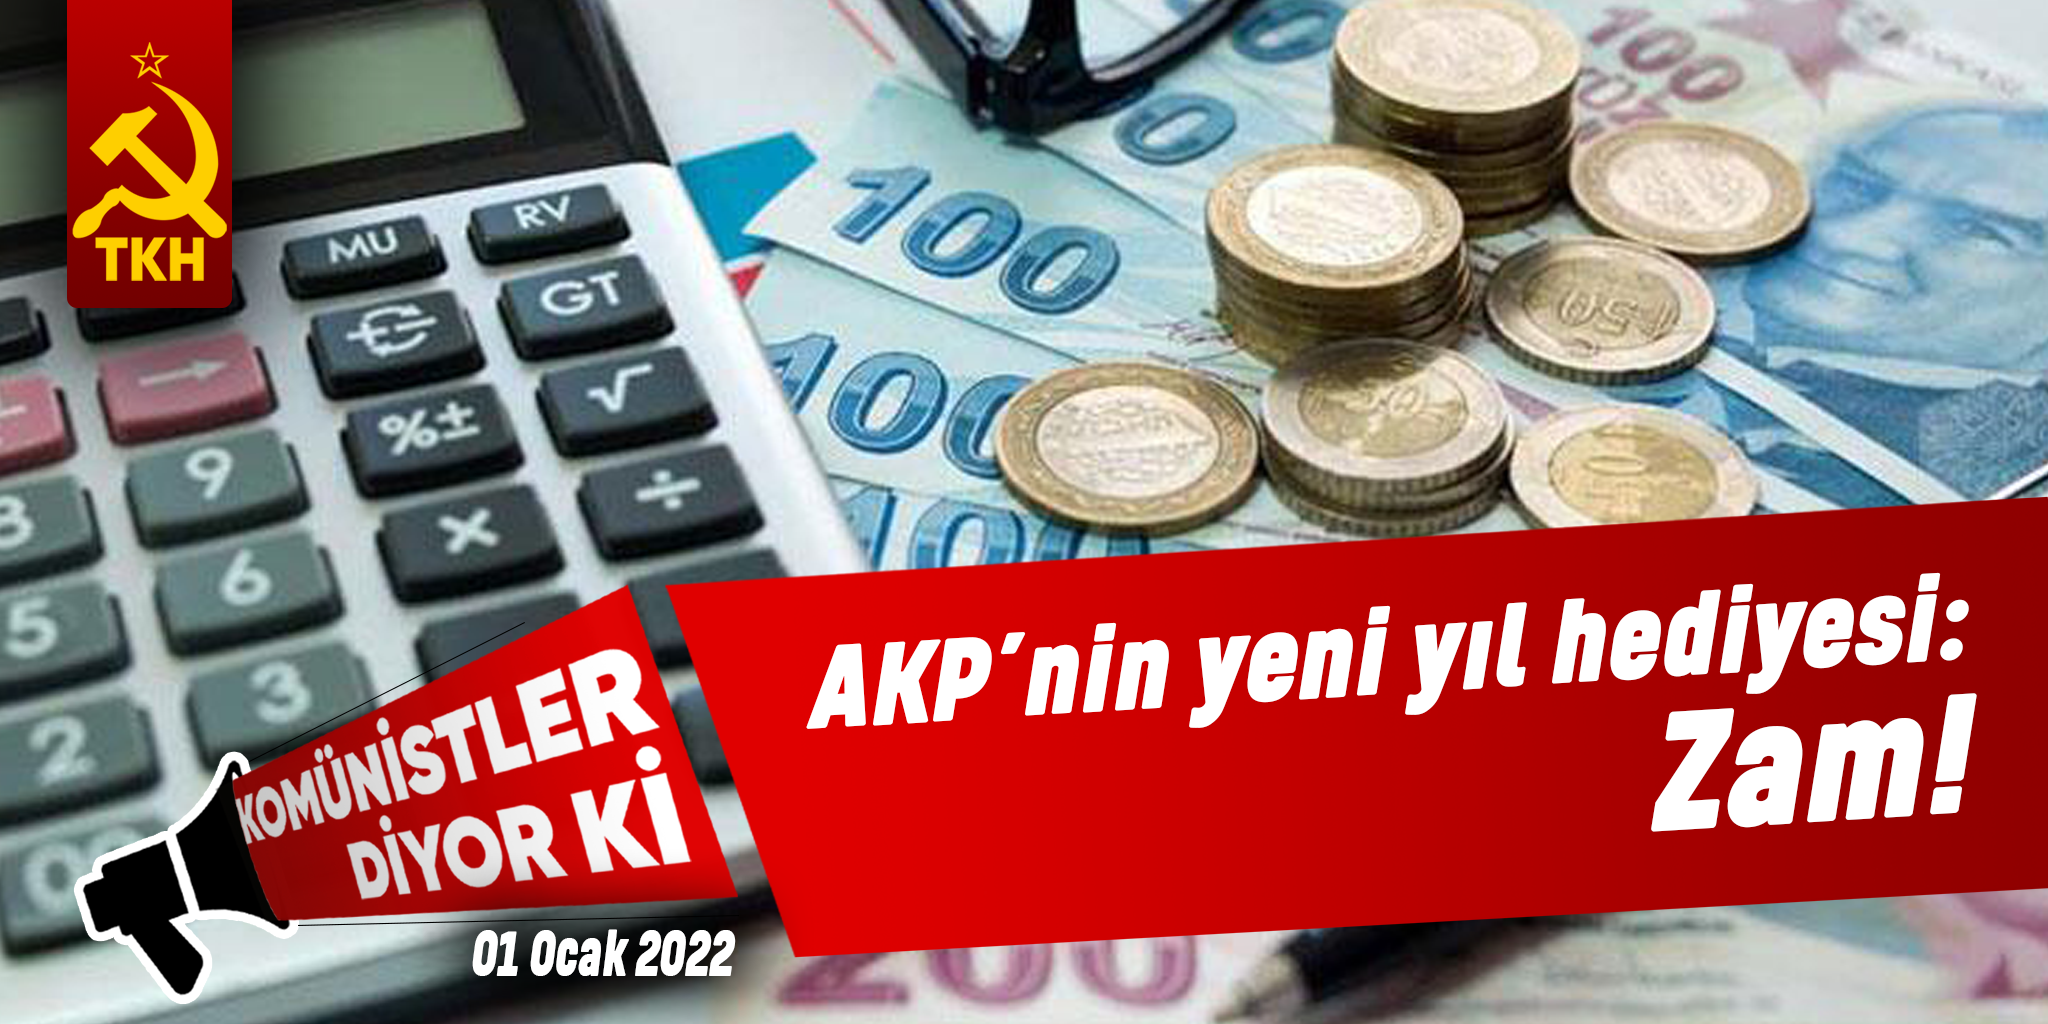 AKP’nin yeni yıl hediyesi: Zam!